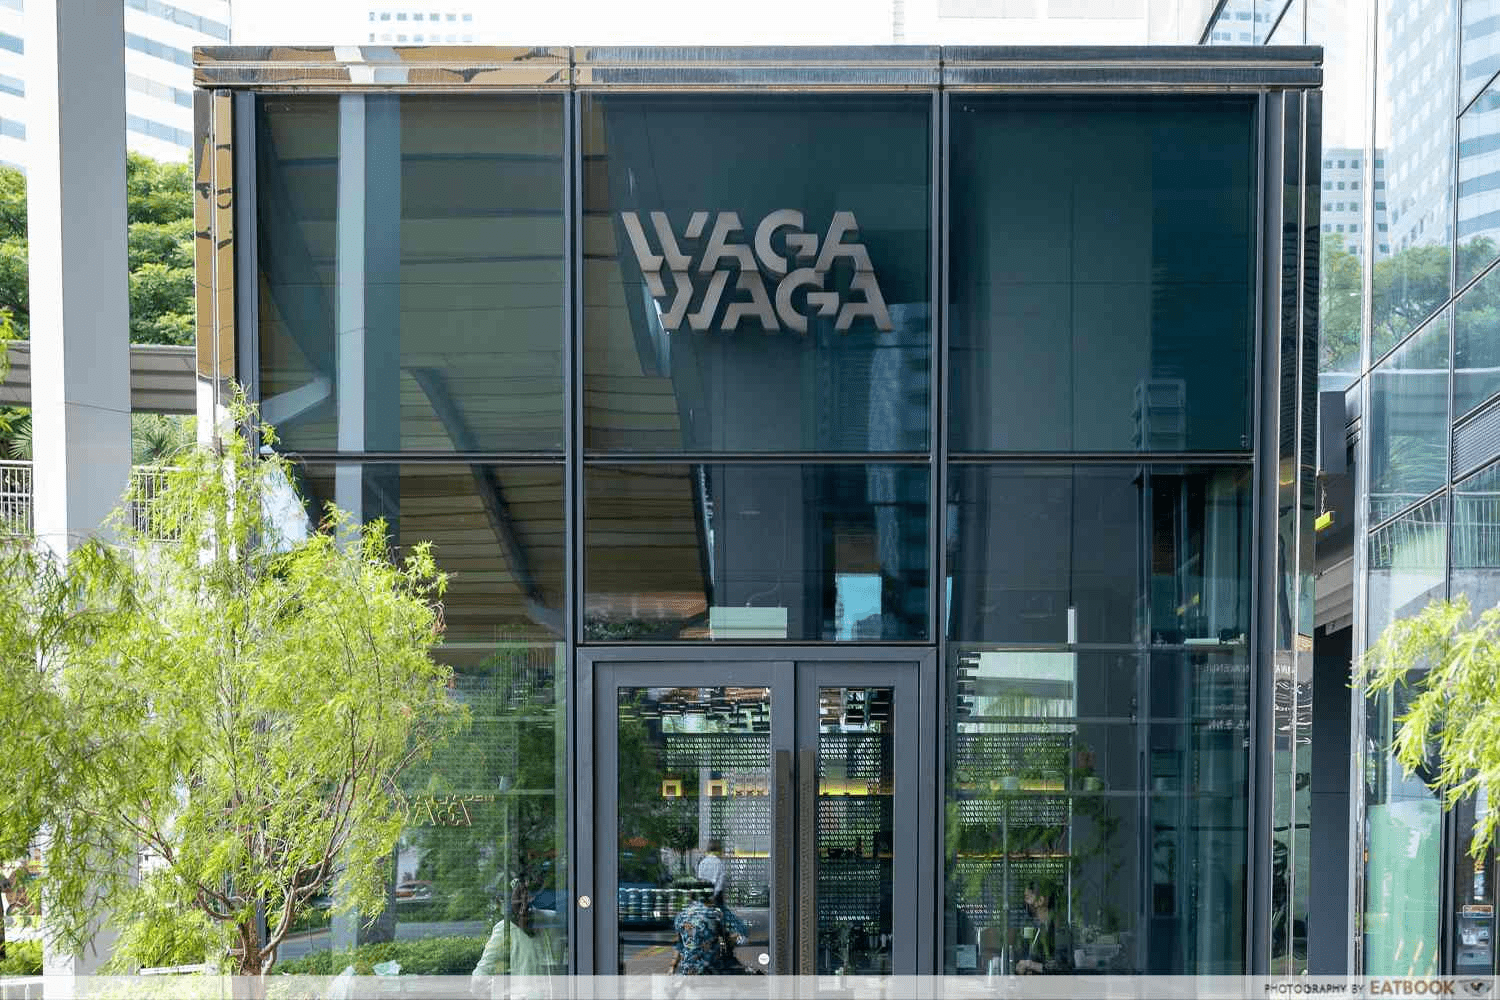 Glass house cafes - Waga Waga Den